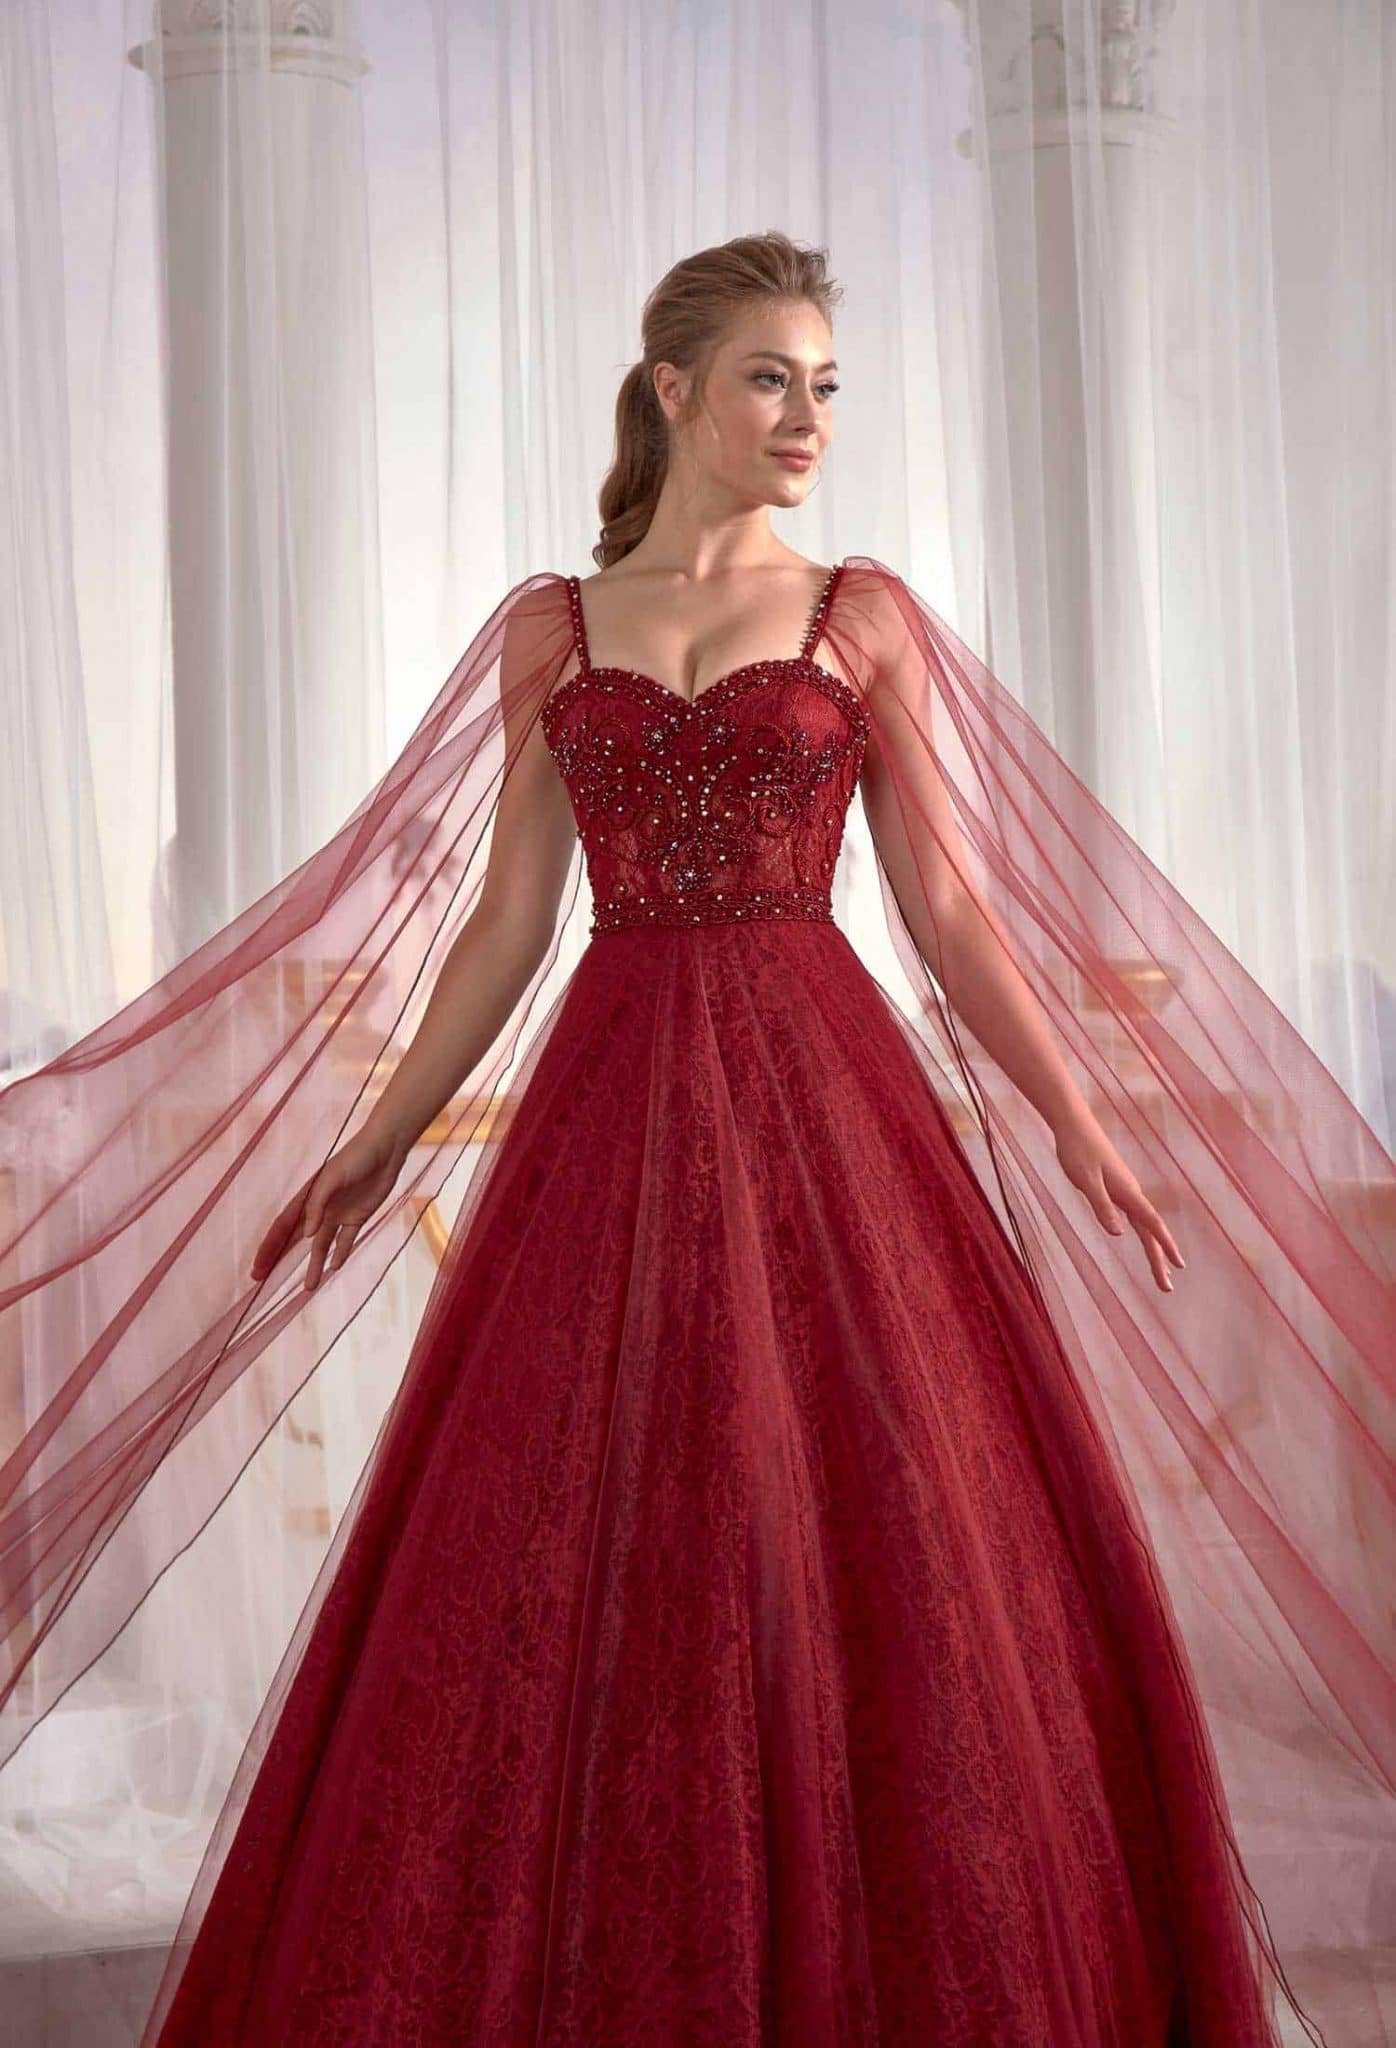 long gown dresses online Burgundy Prom Dress Cold Shoulder Straps Lace Appliques Tulle Veil Embellished Top Detail (1)